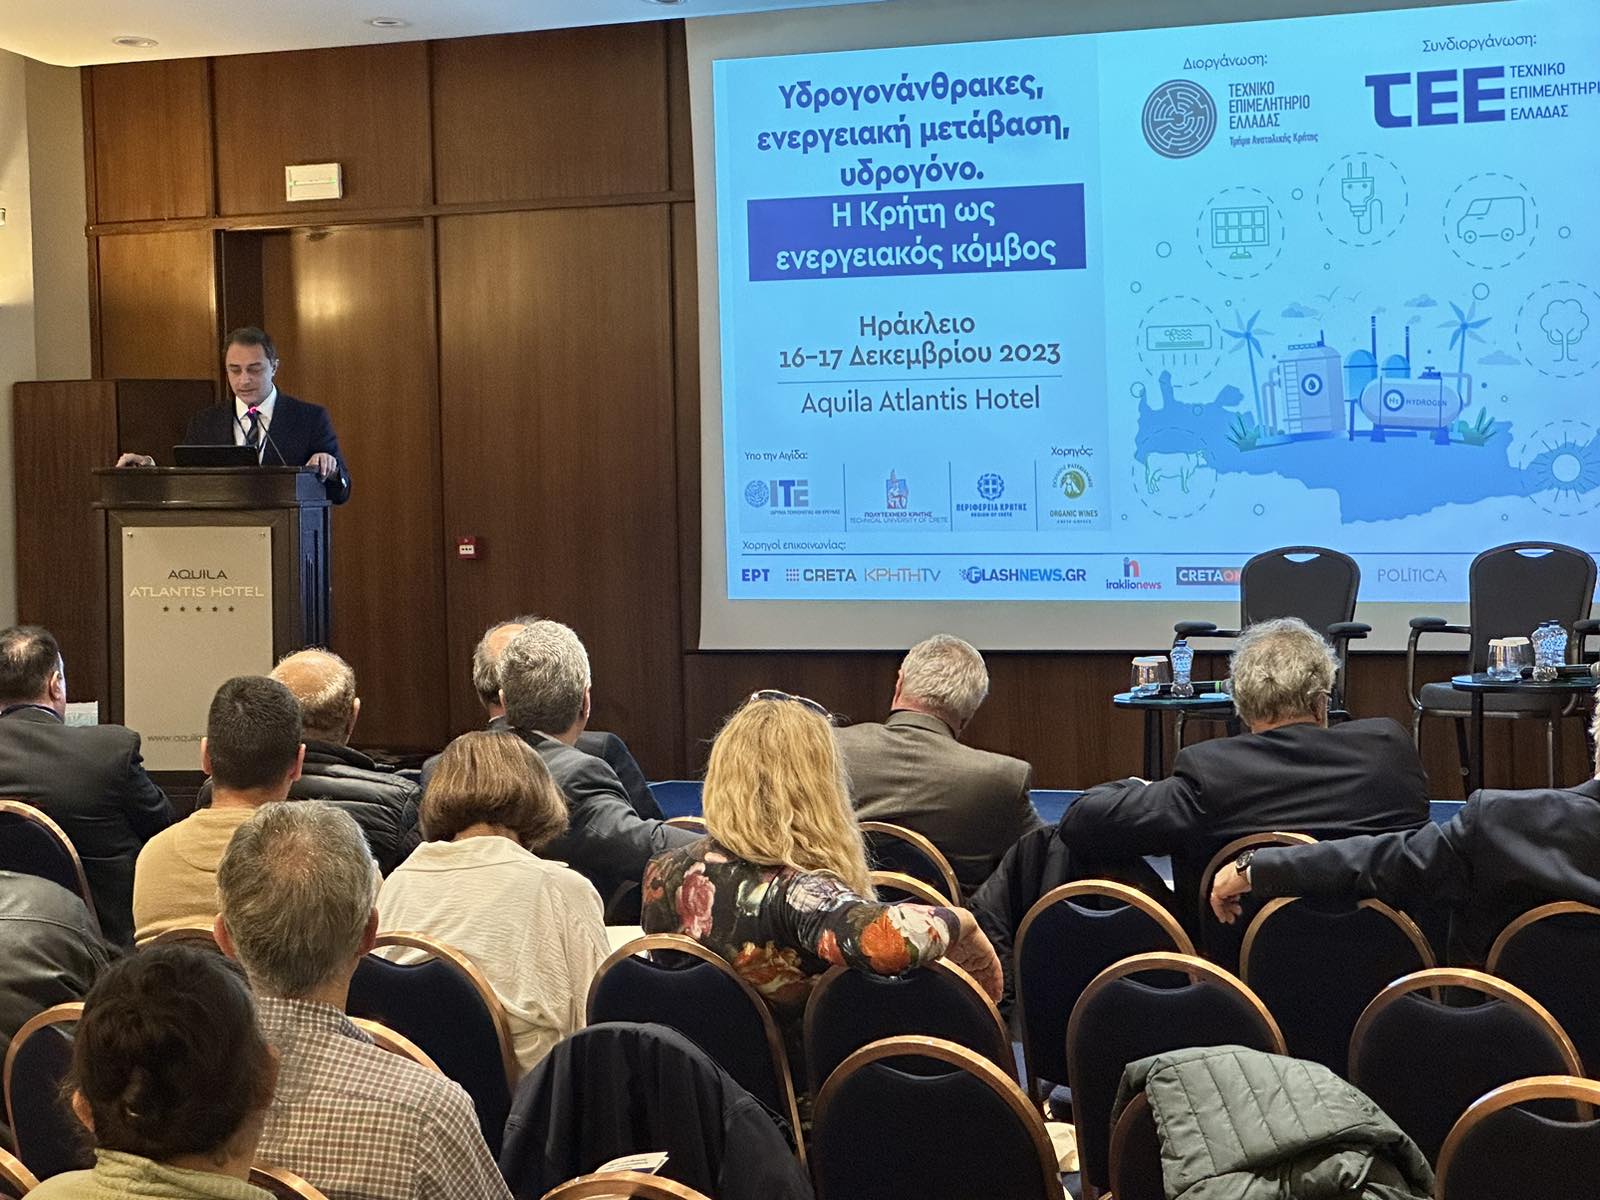 Ομιλία στην Ημερίδα του ΤΕΕ/ΤΑΚ Υδρογονάνθρακες & Περιφερειακή Ανάπτυξη | Η Κρήτη ως ενεργειακός κόμβος admin